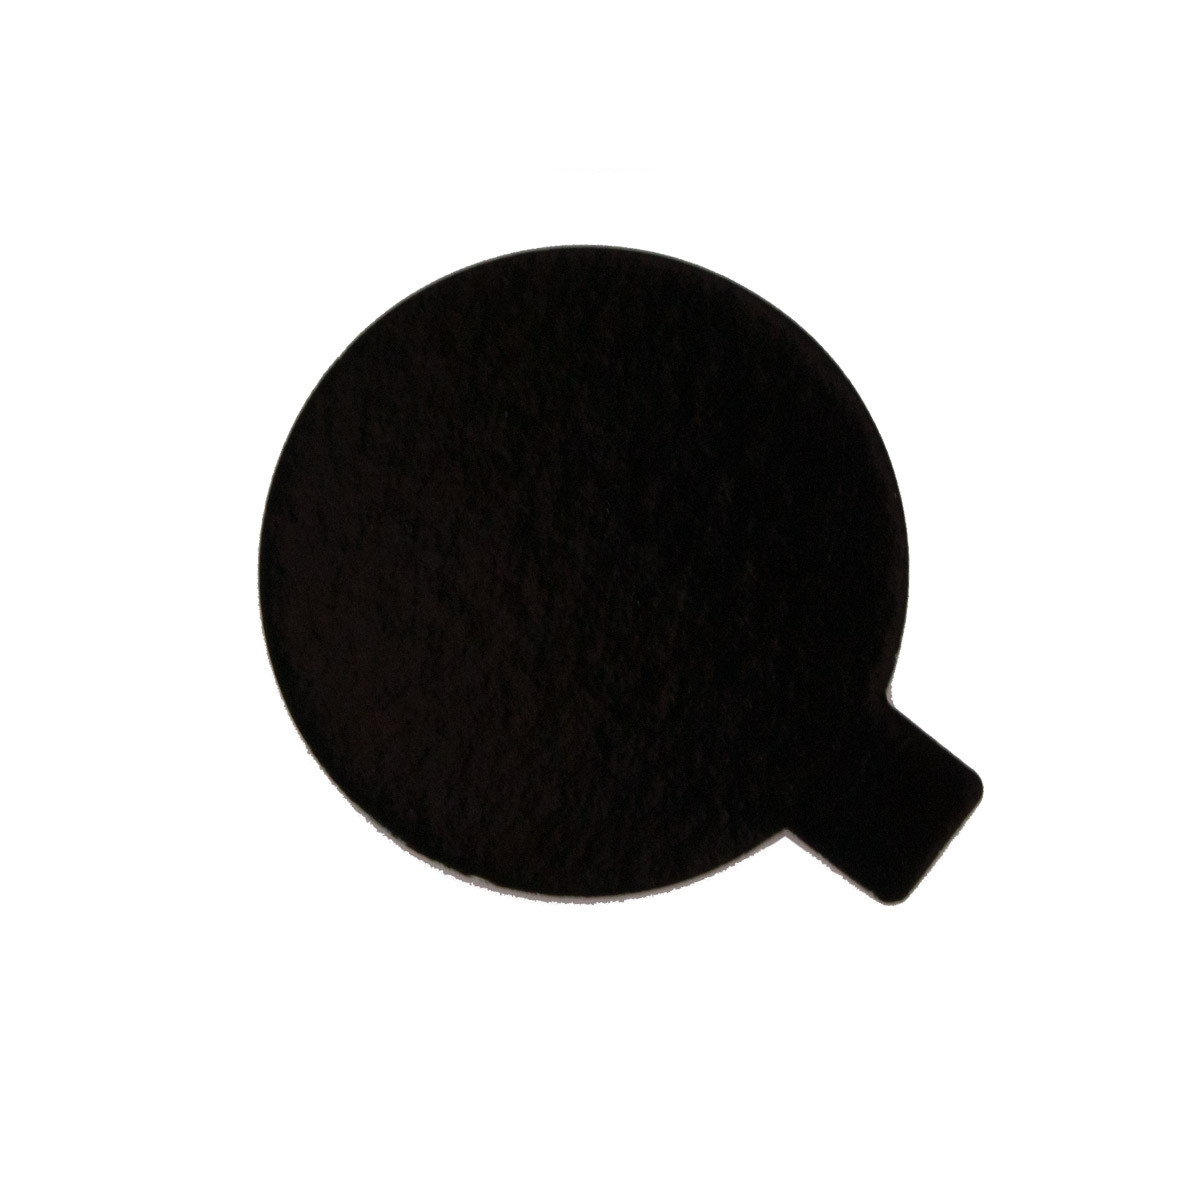 Taartkarton Goud/Zwart met lip Ø4 cm per stuk